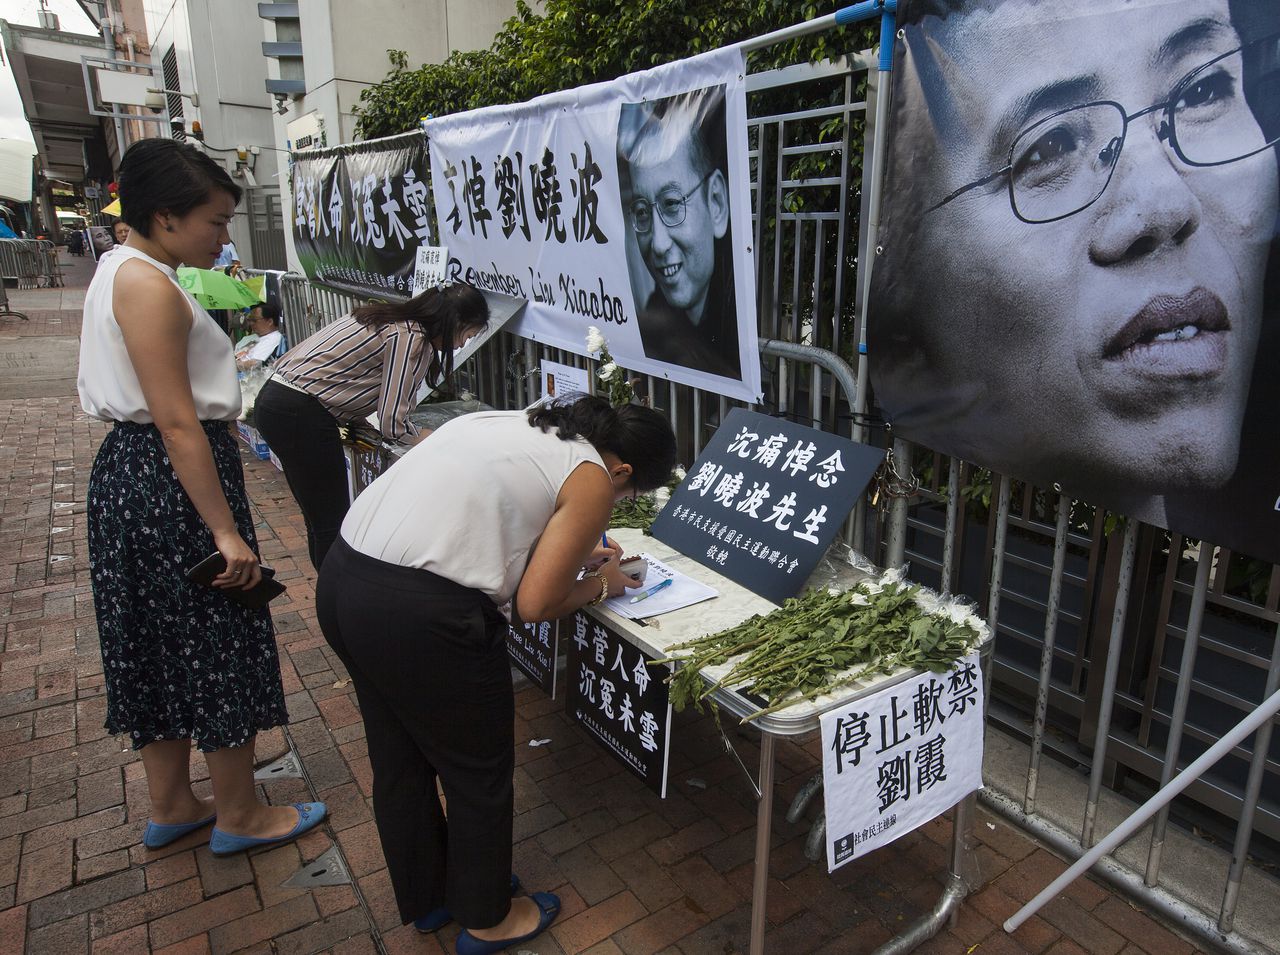 Iemand schrijft iets in het condoleanceregister en legt bloemen als betuiging van respect aan Xiaobo.